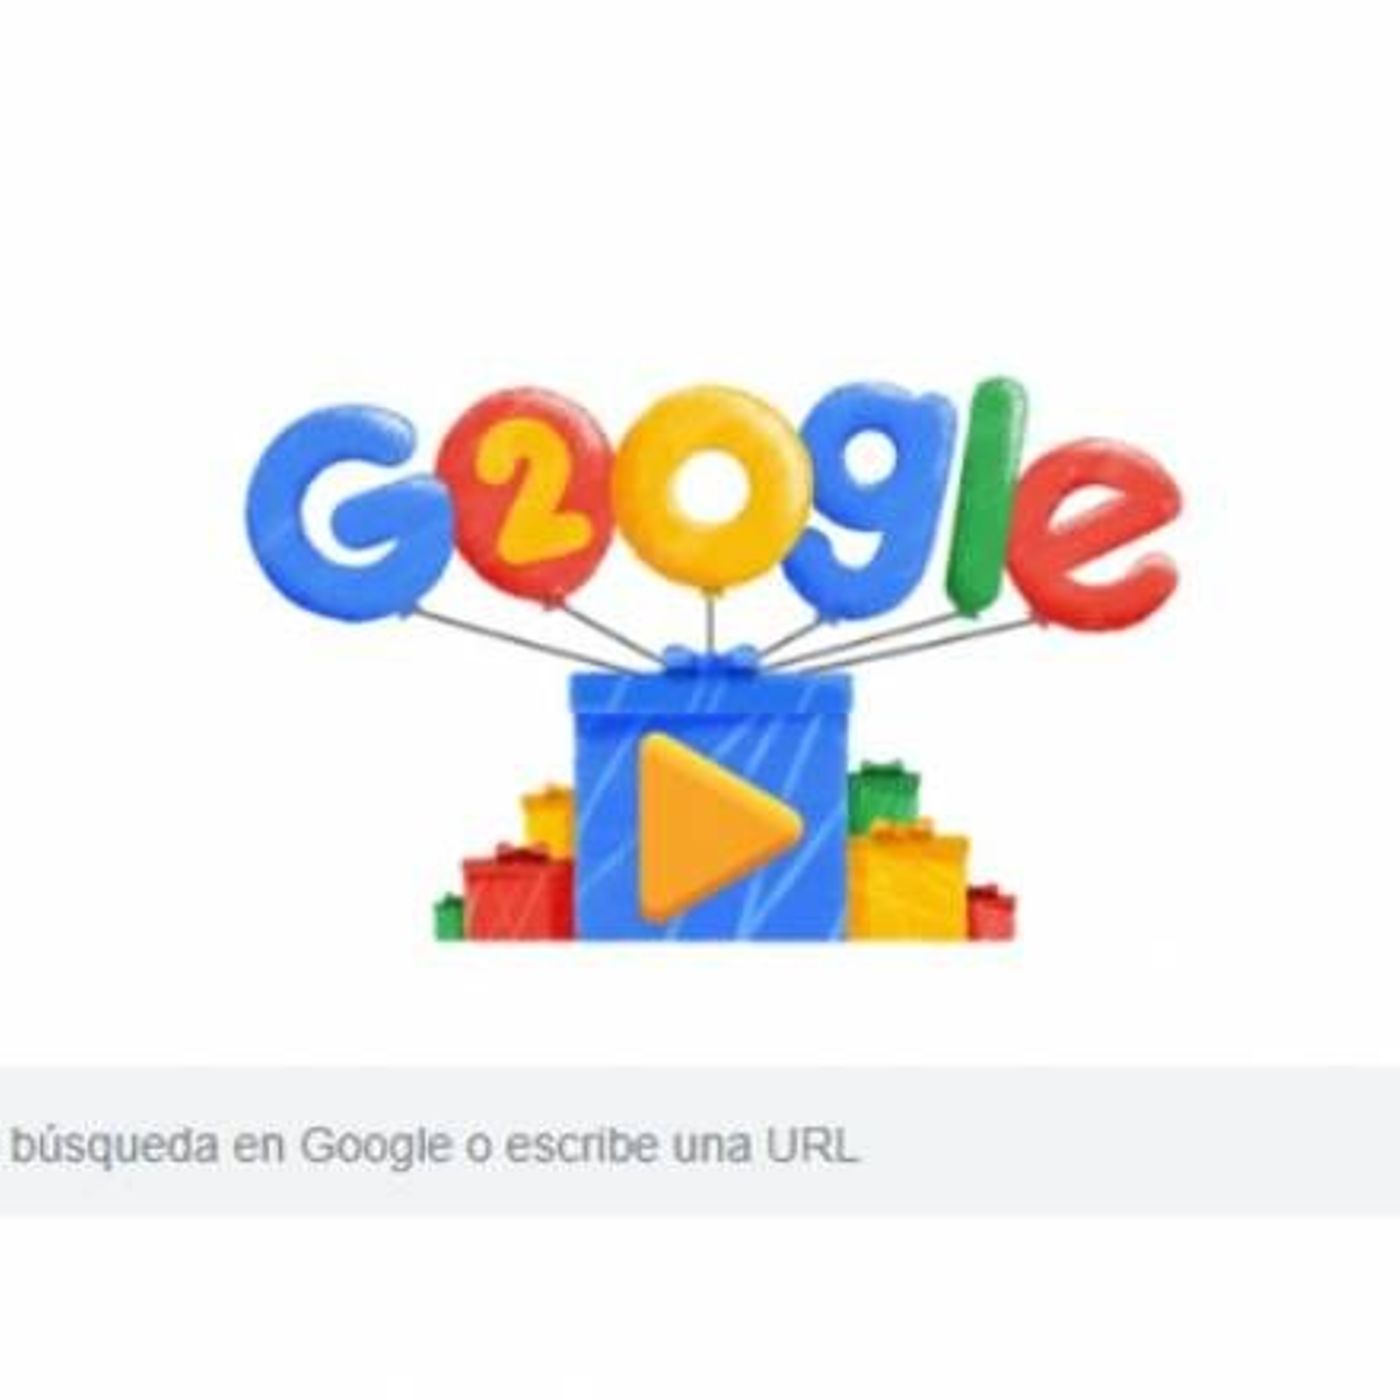 20 años de Google